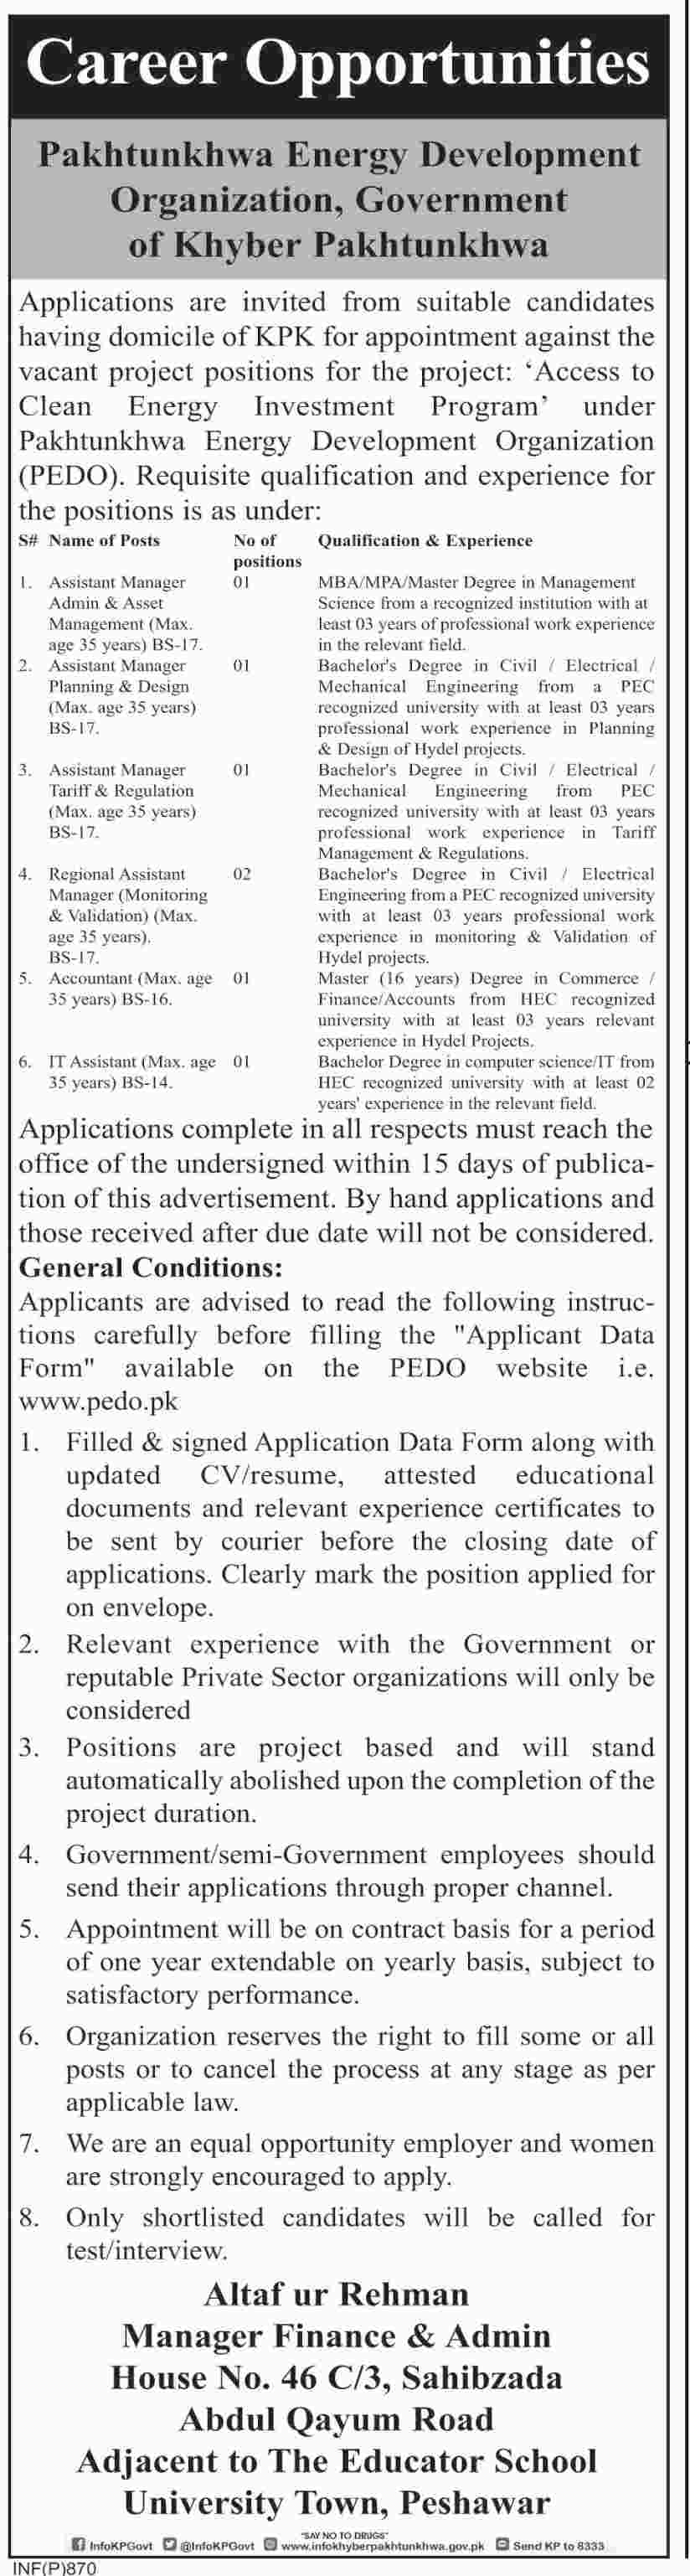 Pakhtunkhwa Energy Development Organization (PEDO) jobs 2019